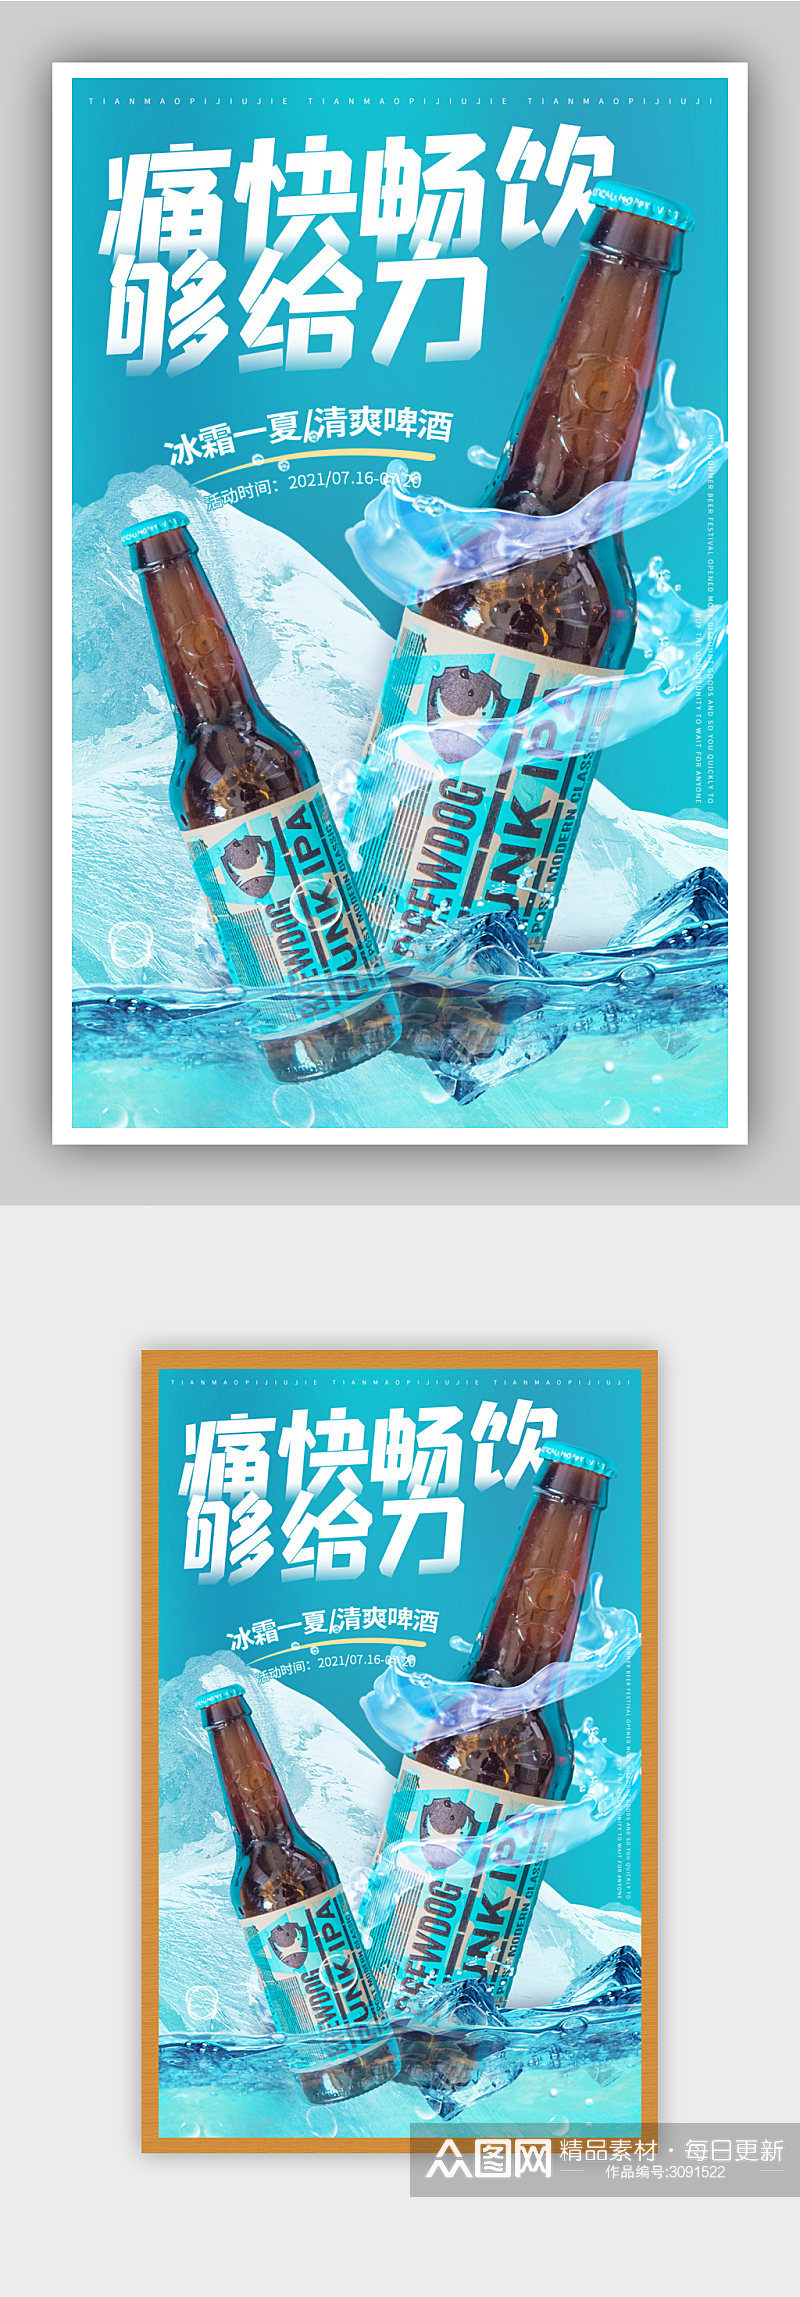 啤酒节狂欢冰镇瓶装啤酒促销海报素材